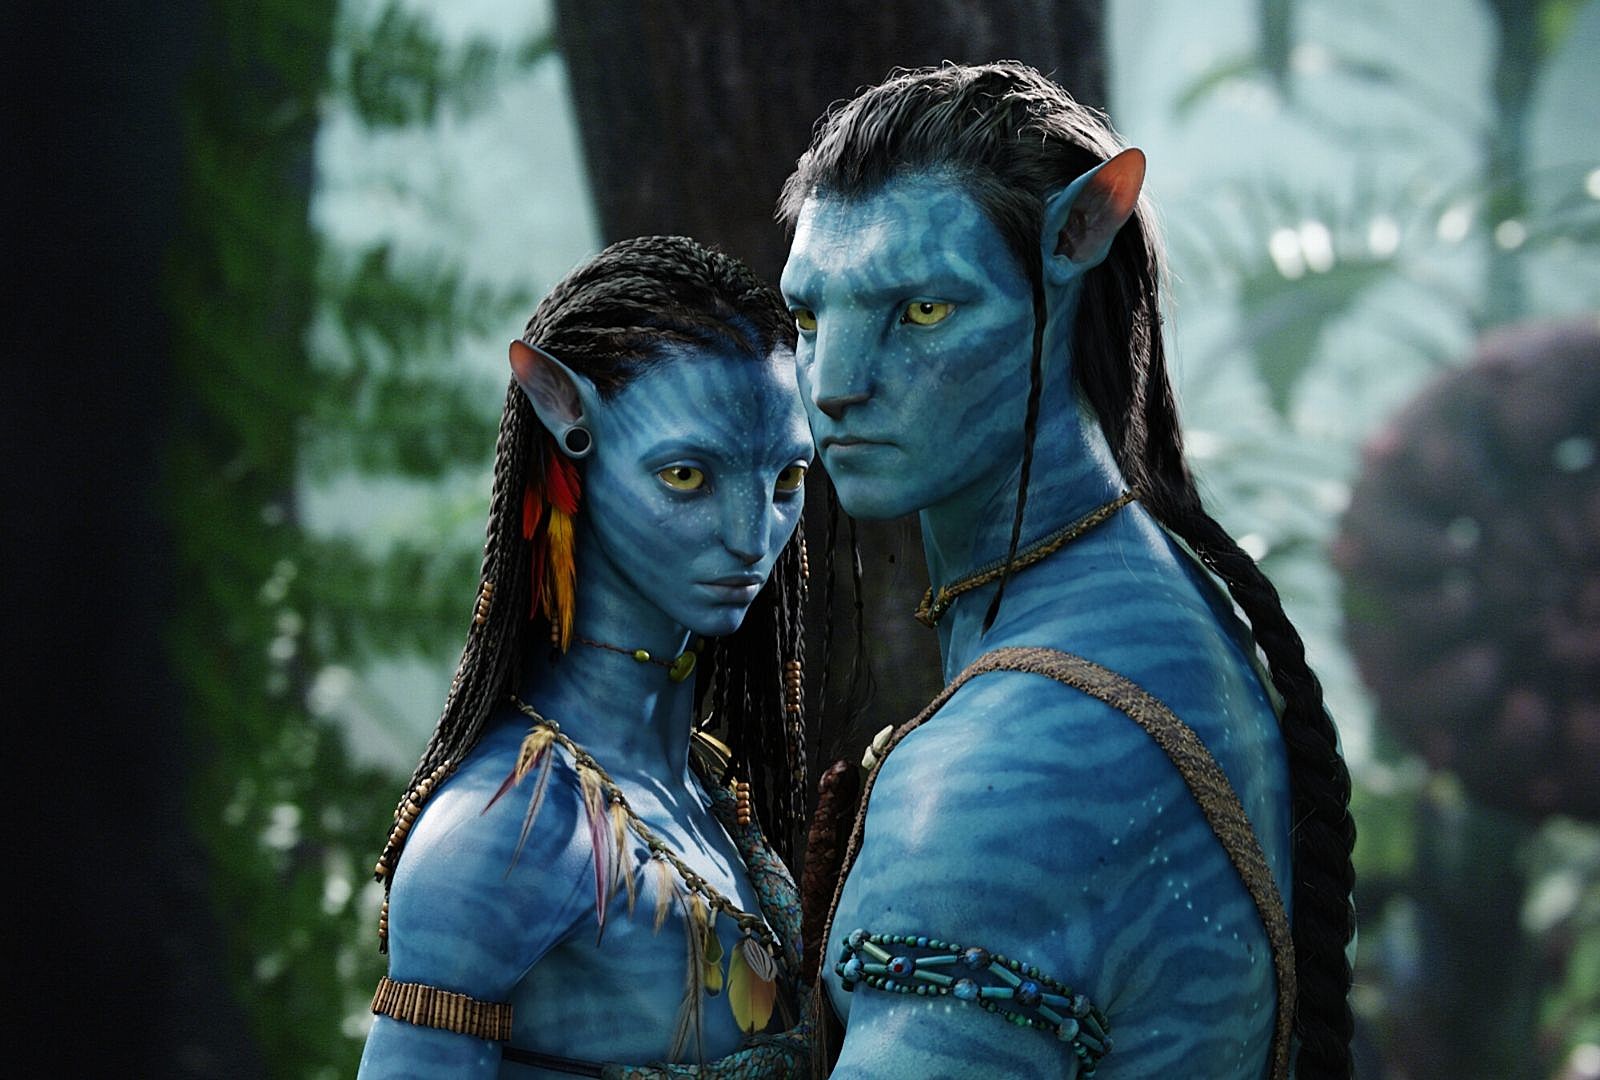 Đã đến lúc hâm nóng tình yêu với Avatar 2 - siêu phẩm điện ảnh được chờ đợi từ năm ngoái, với tiêu đề và thông tin mới nhất được tiết lộ, hứa hẹn mang đến cho khán giả những phút giây tuyệt vời và cảm xúc thiêng liêng.